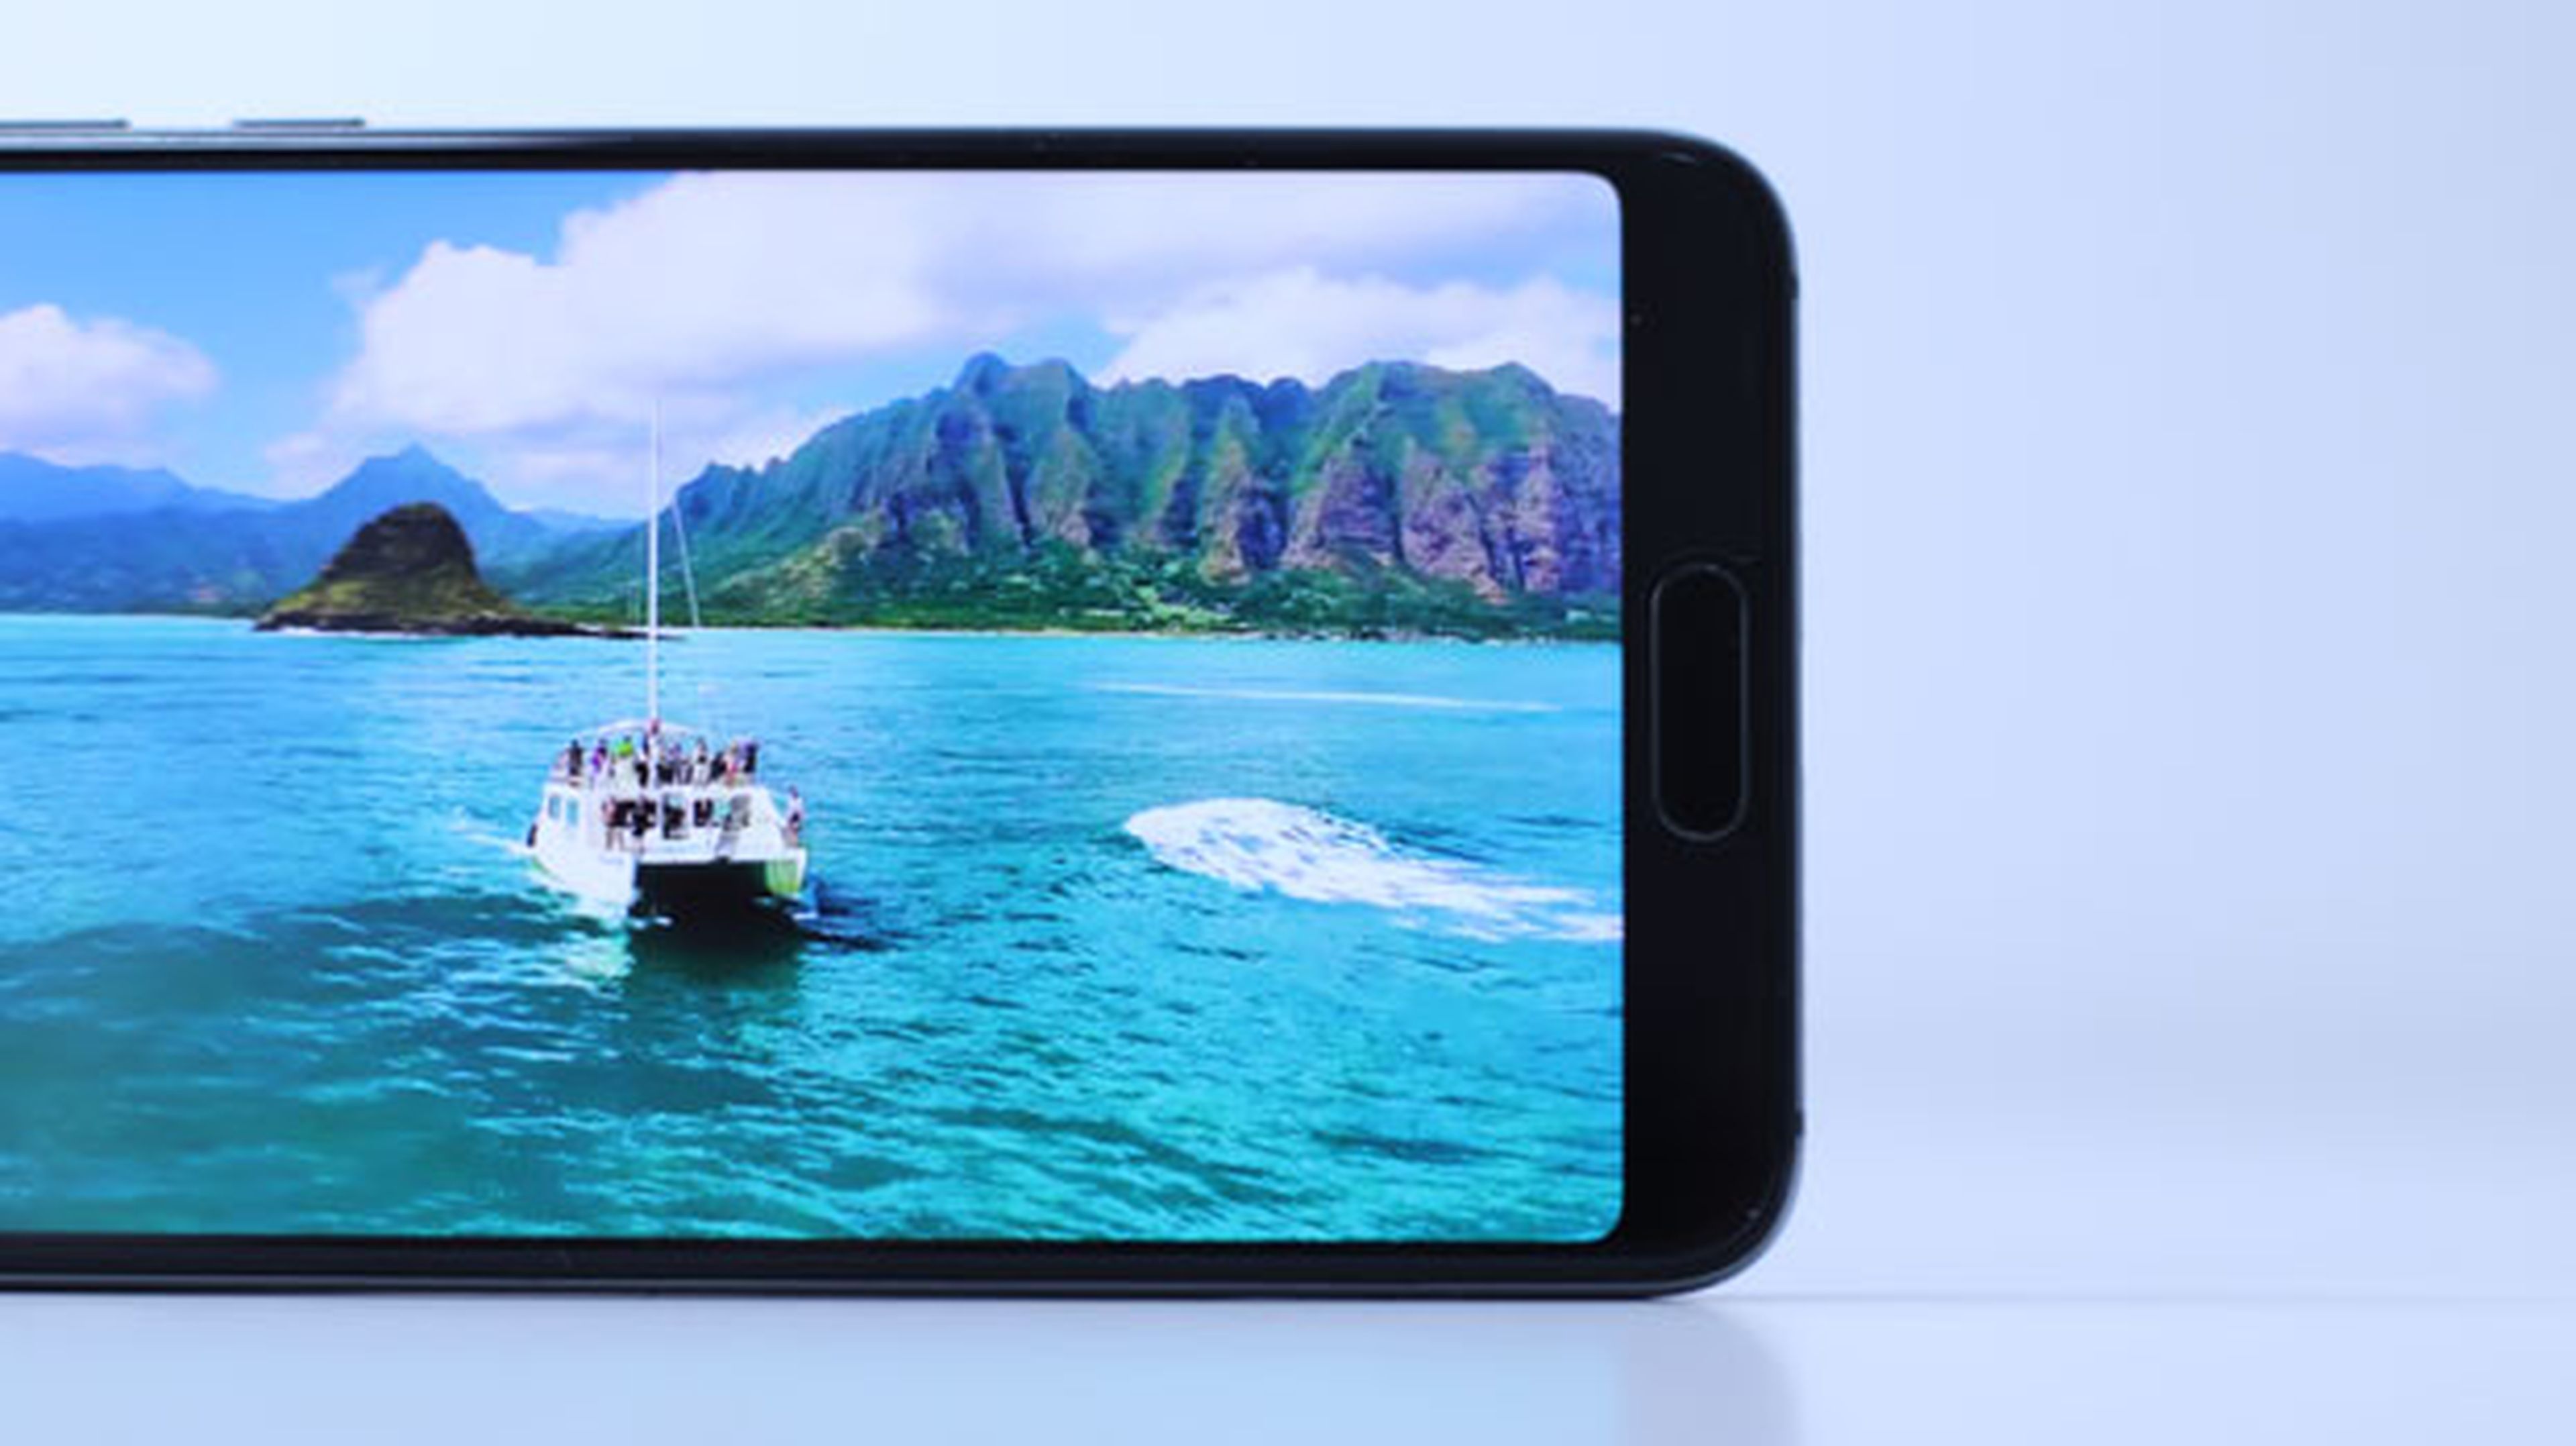 Es hora de dar nuestras recomendaciones y opiniones sobre este móvil de Huawei